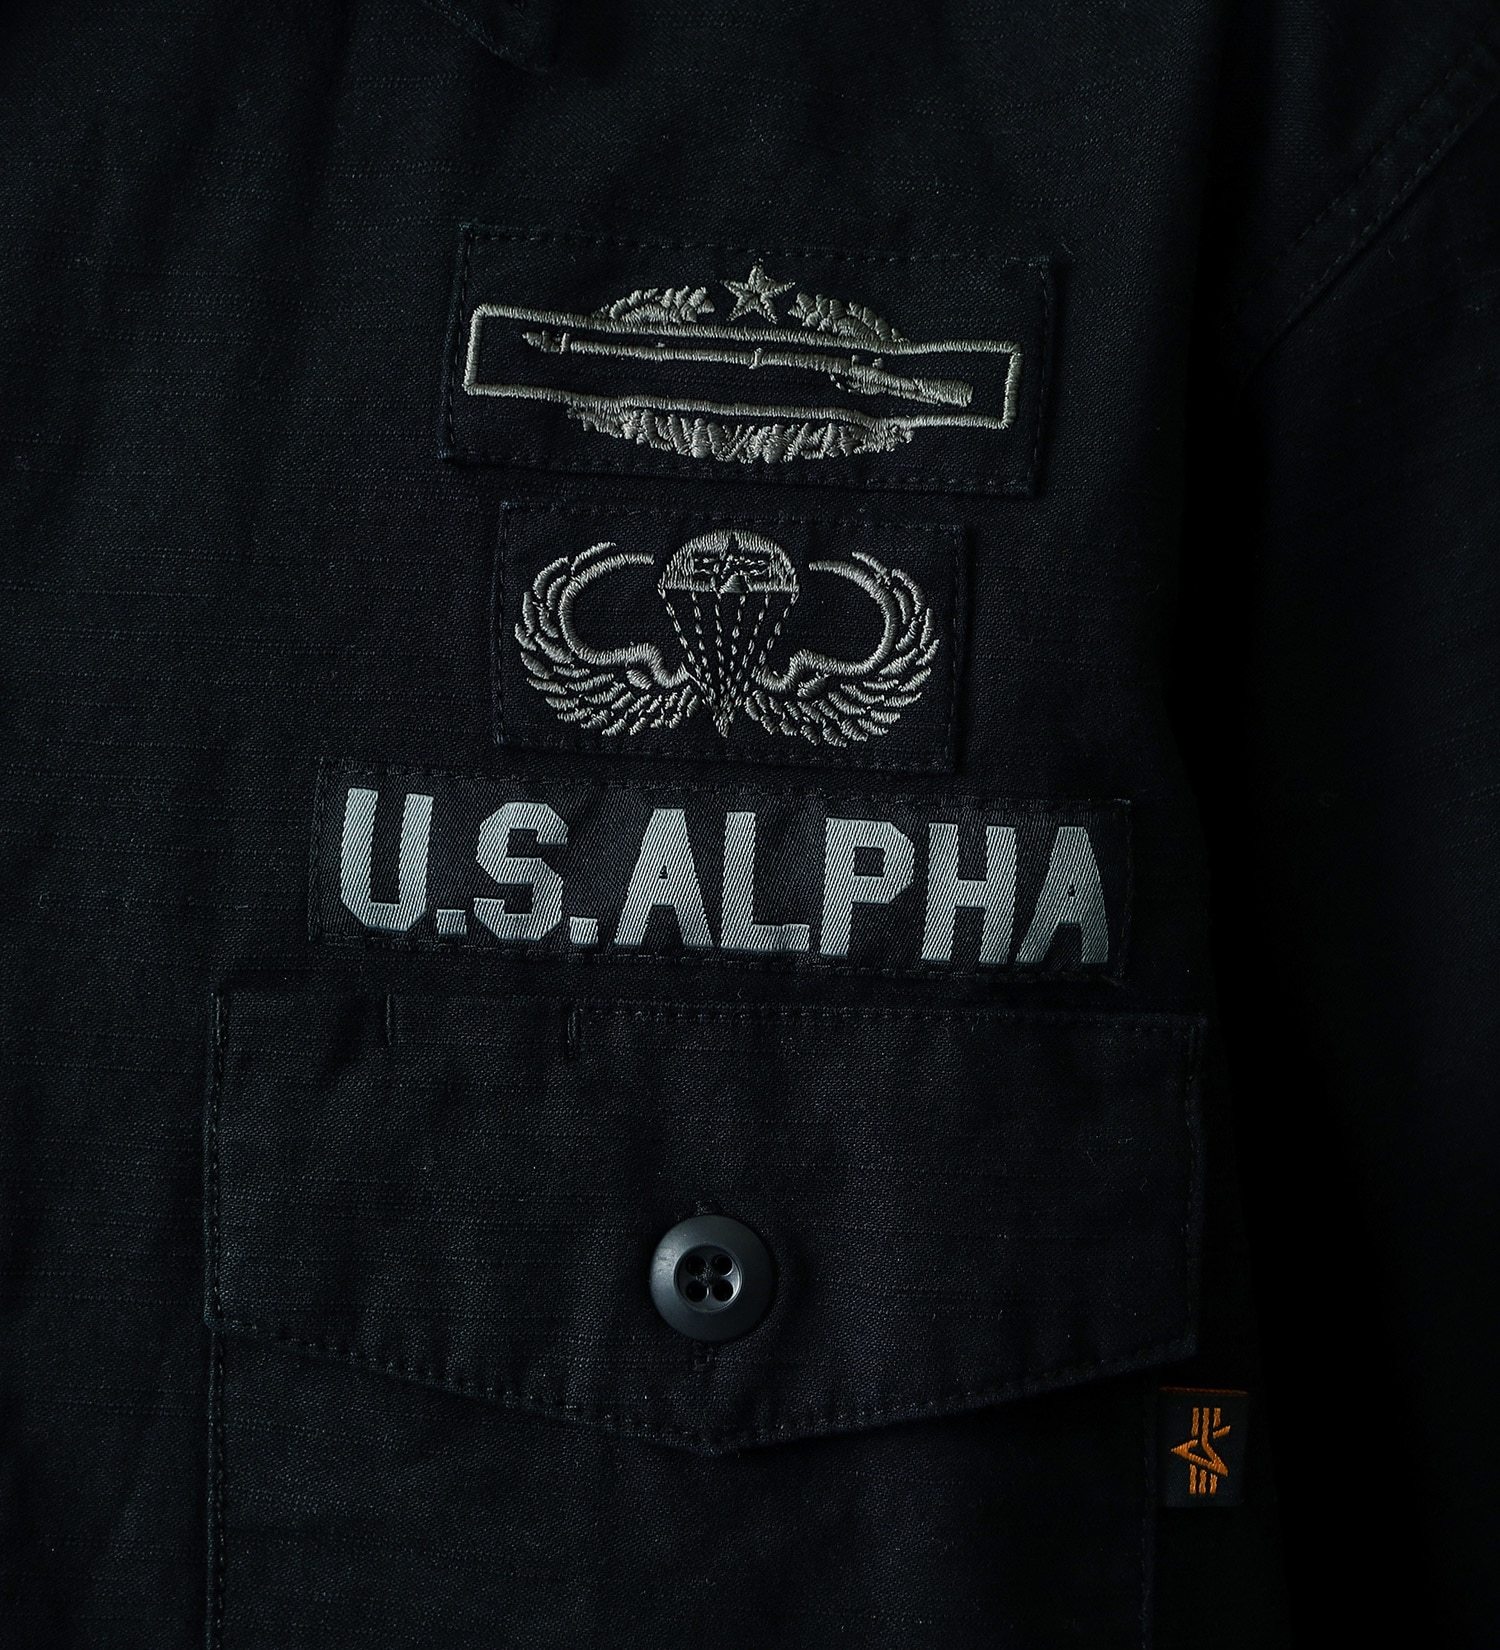 ALPHA(アルファ)のユーティリティーシャツ 半袖(ARMY PATCH)|トップス/シャツ/ブラウス/メンズ|ブラック